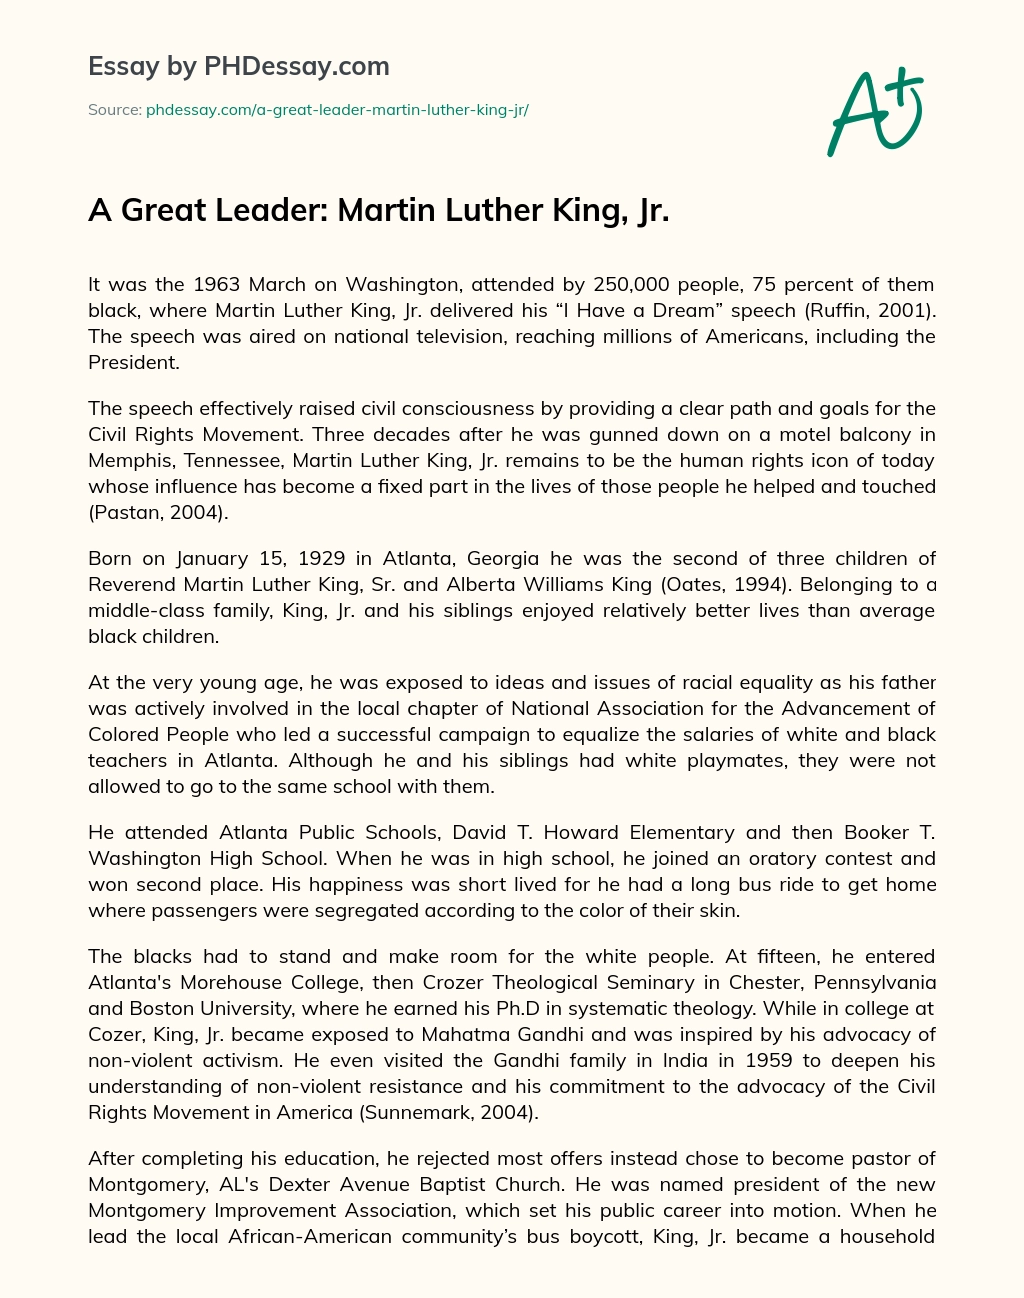 martin luther king speech essay